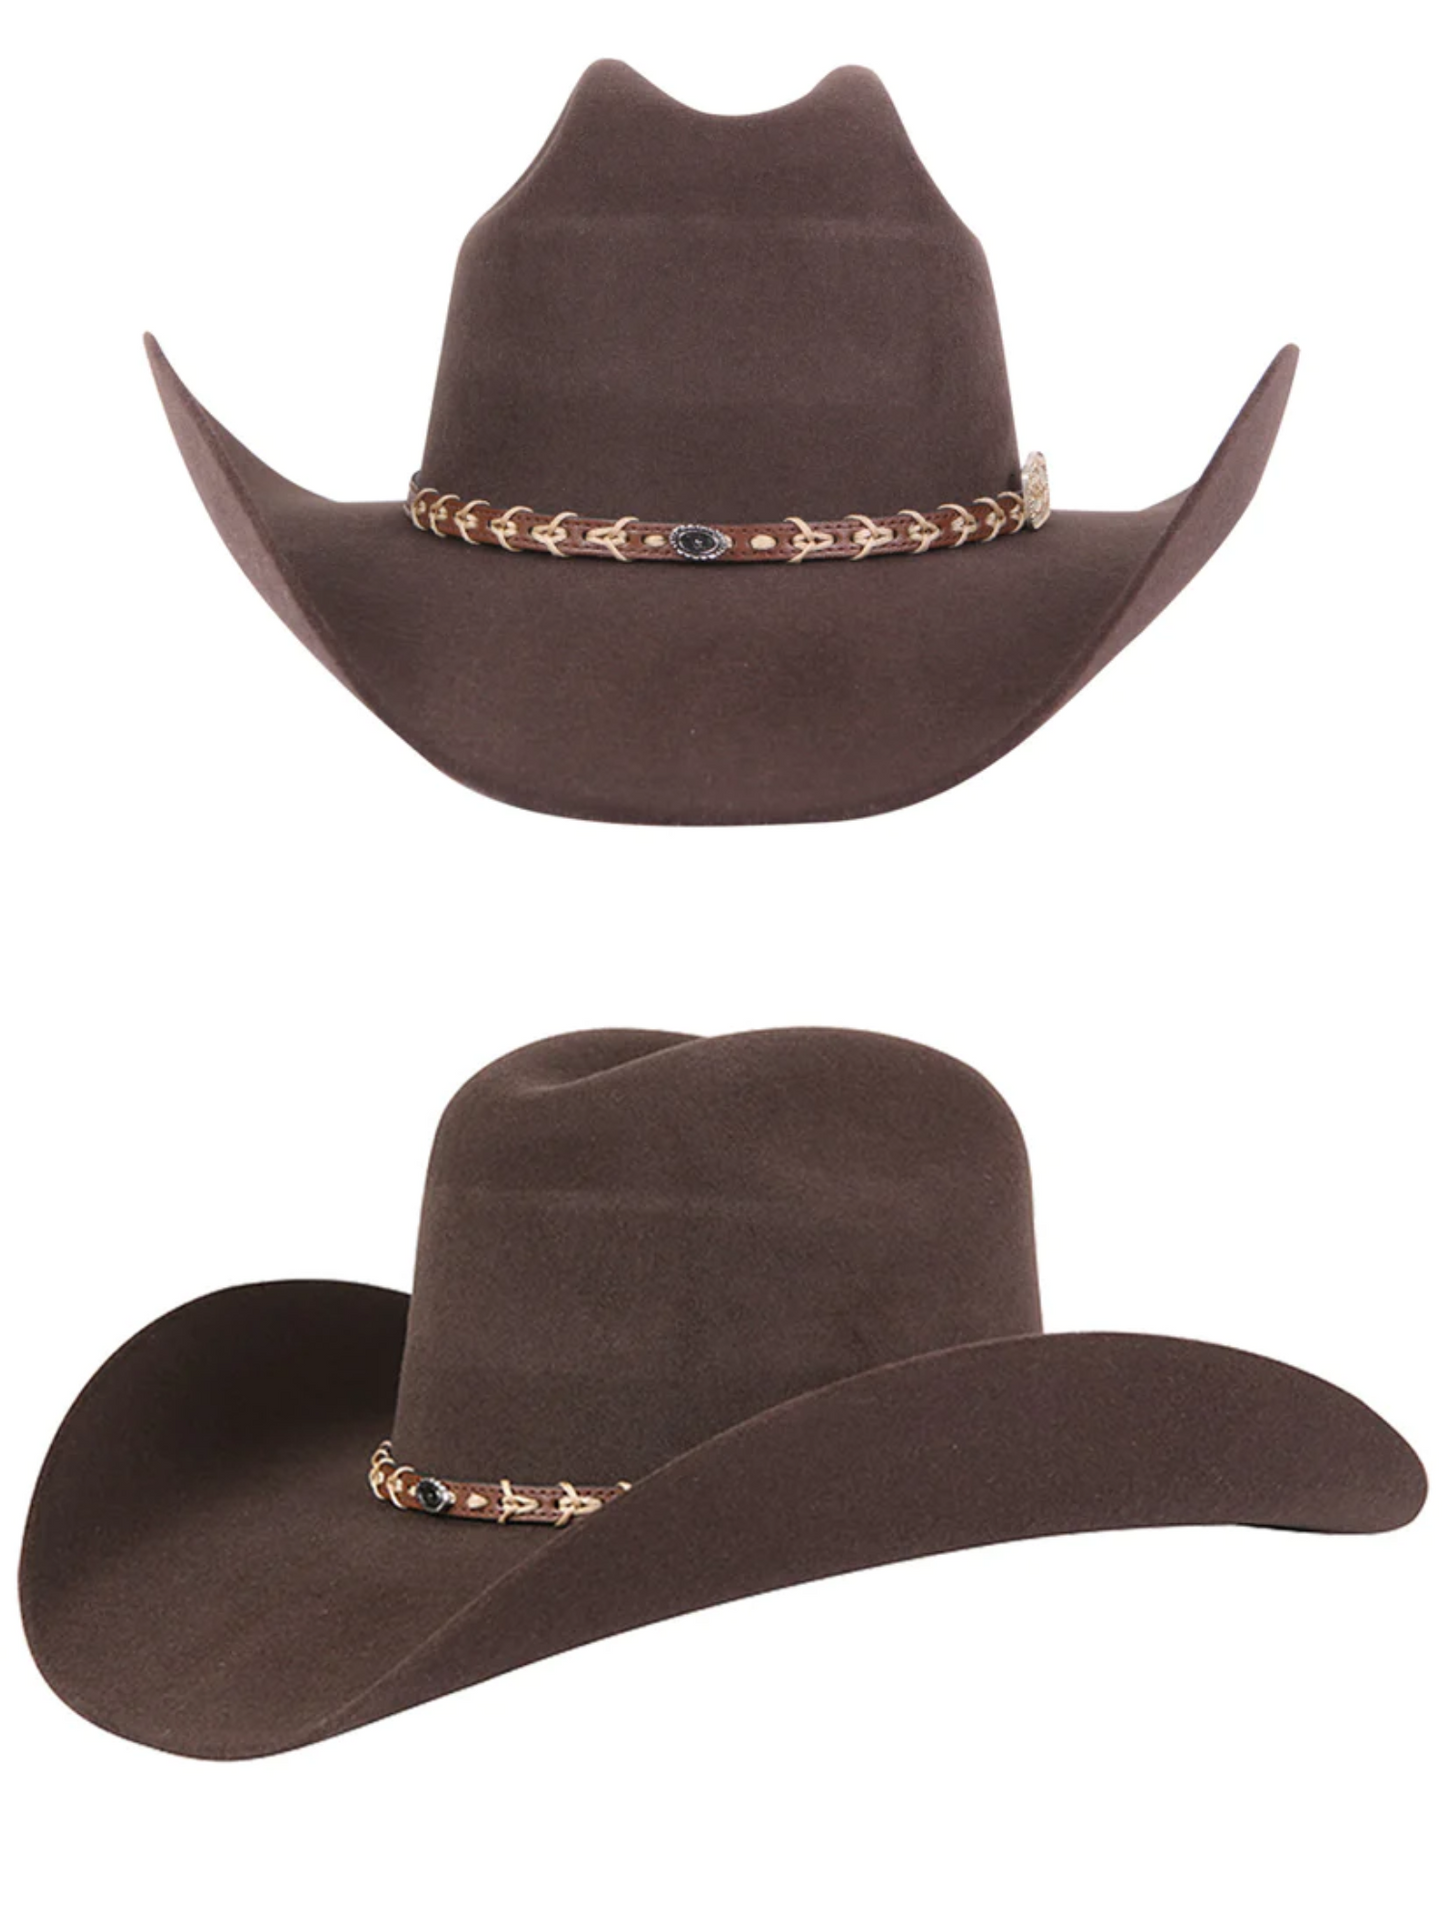 Texana Last Rebeka 50X Wool for Men 'El Señor de los Cielos' - ID: 41676 Cowboy Hat El Señor de los Cielos